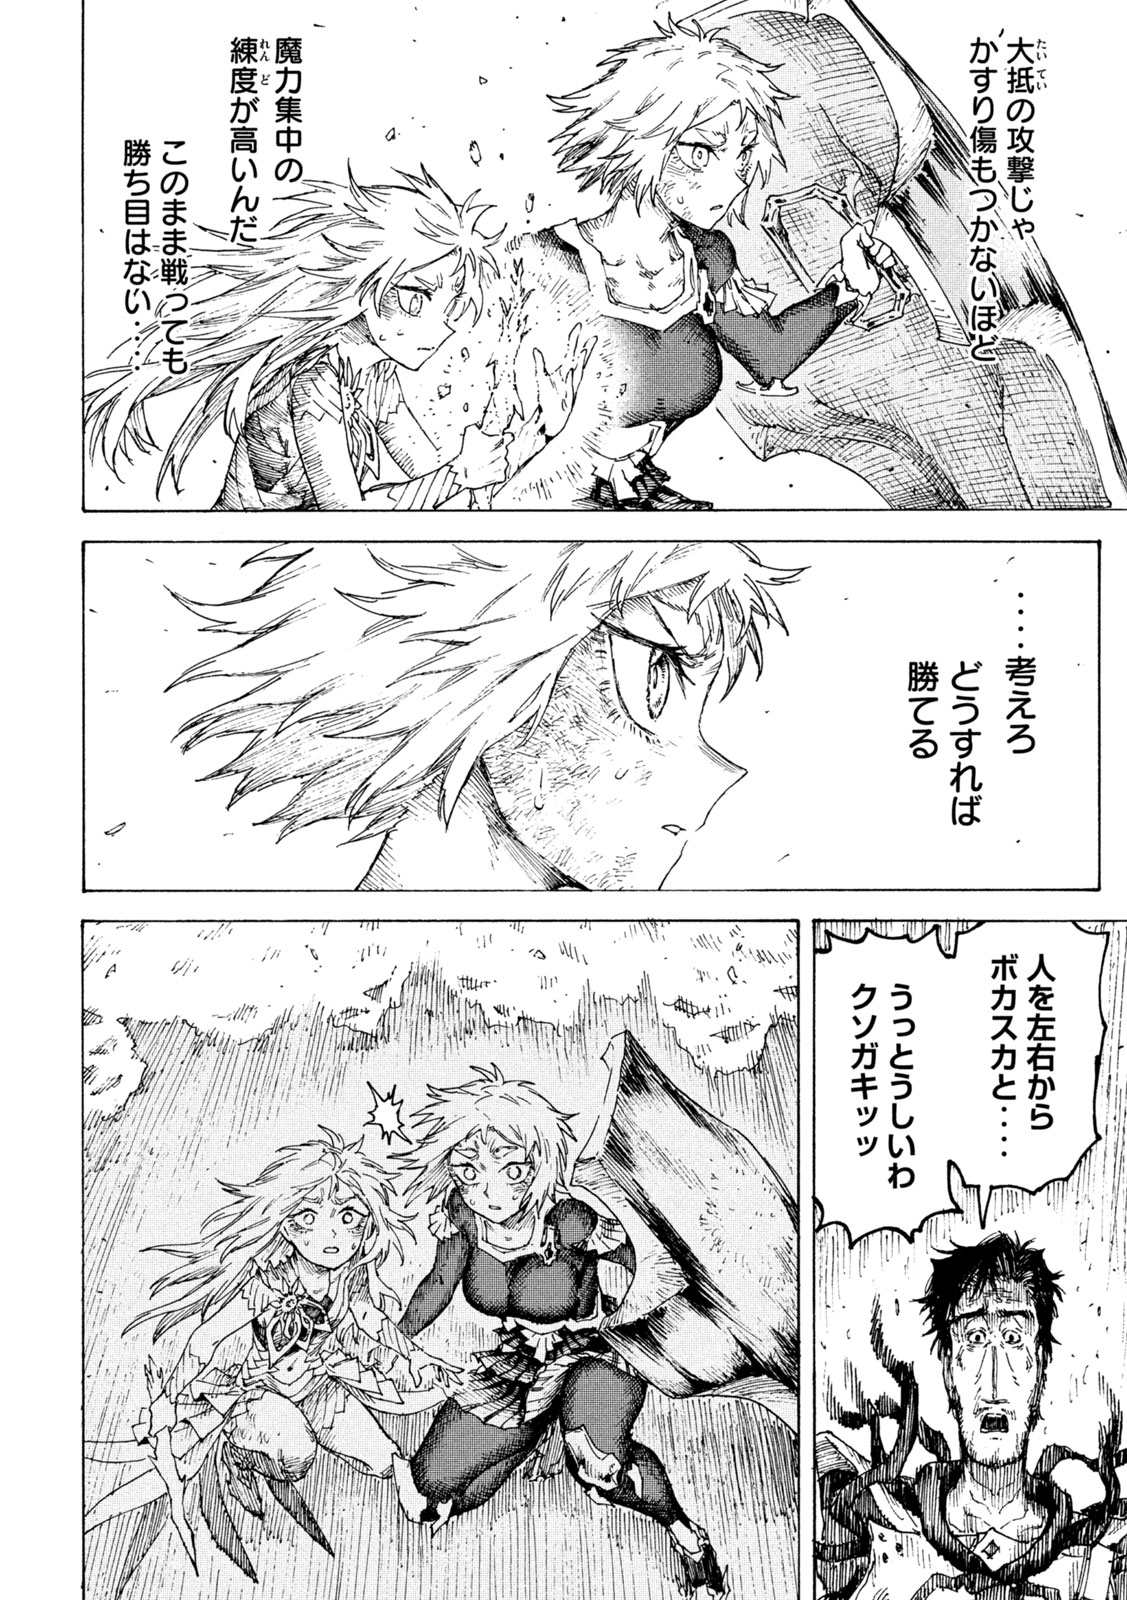 Senka - Chapter 20 - Page 6